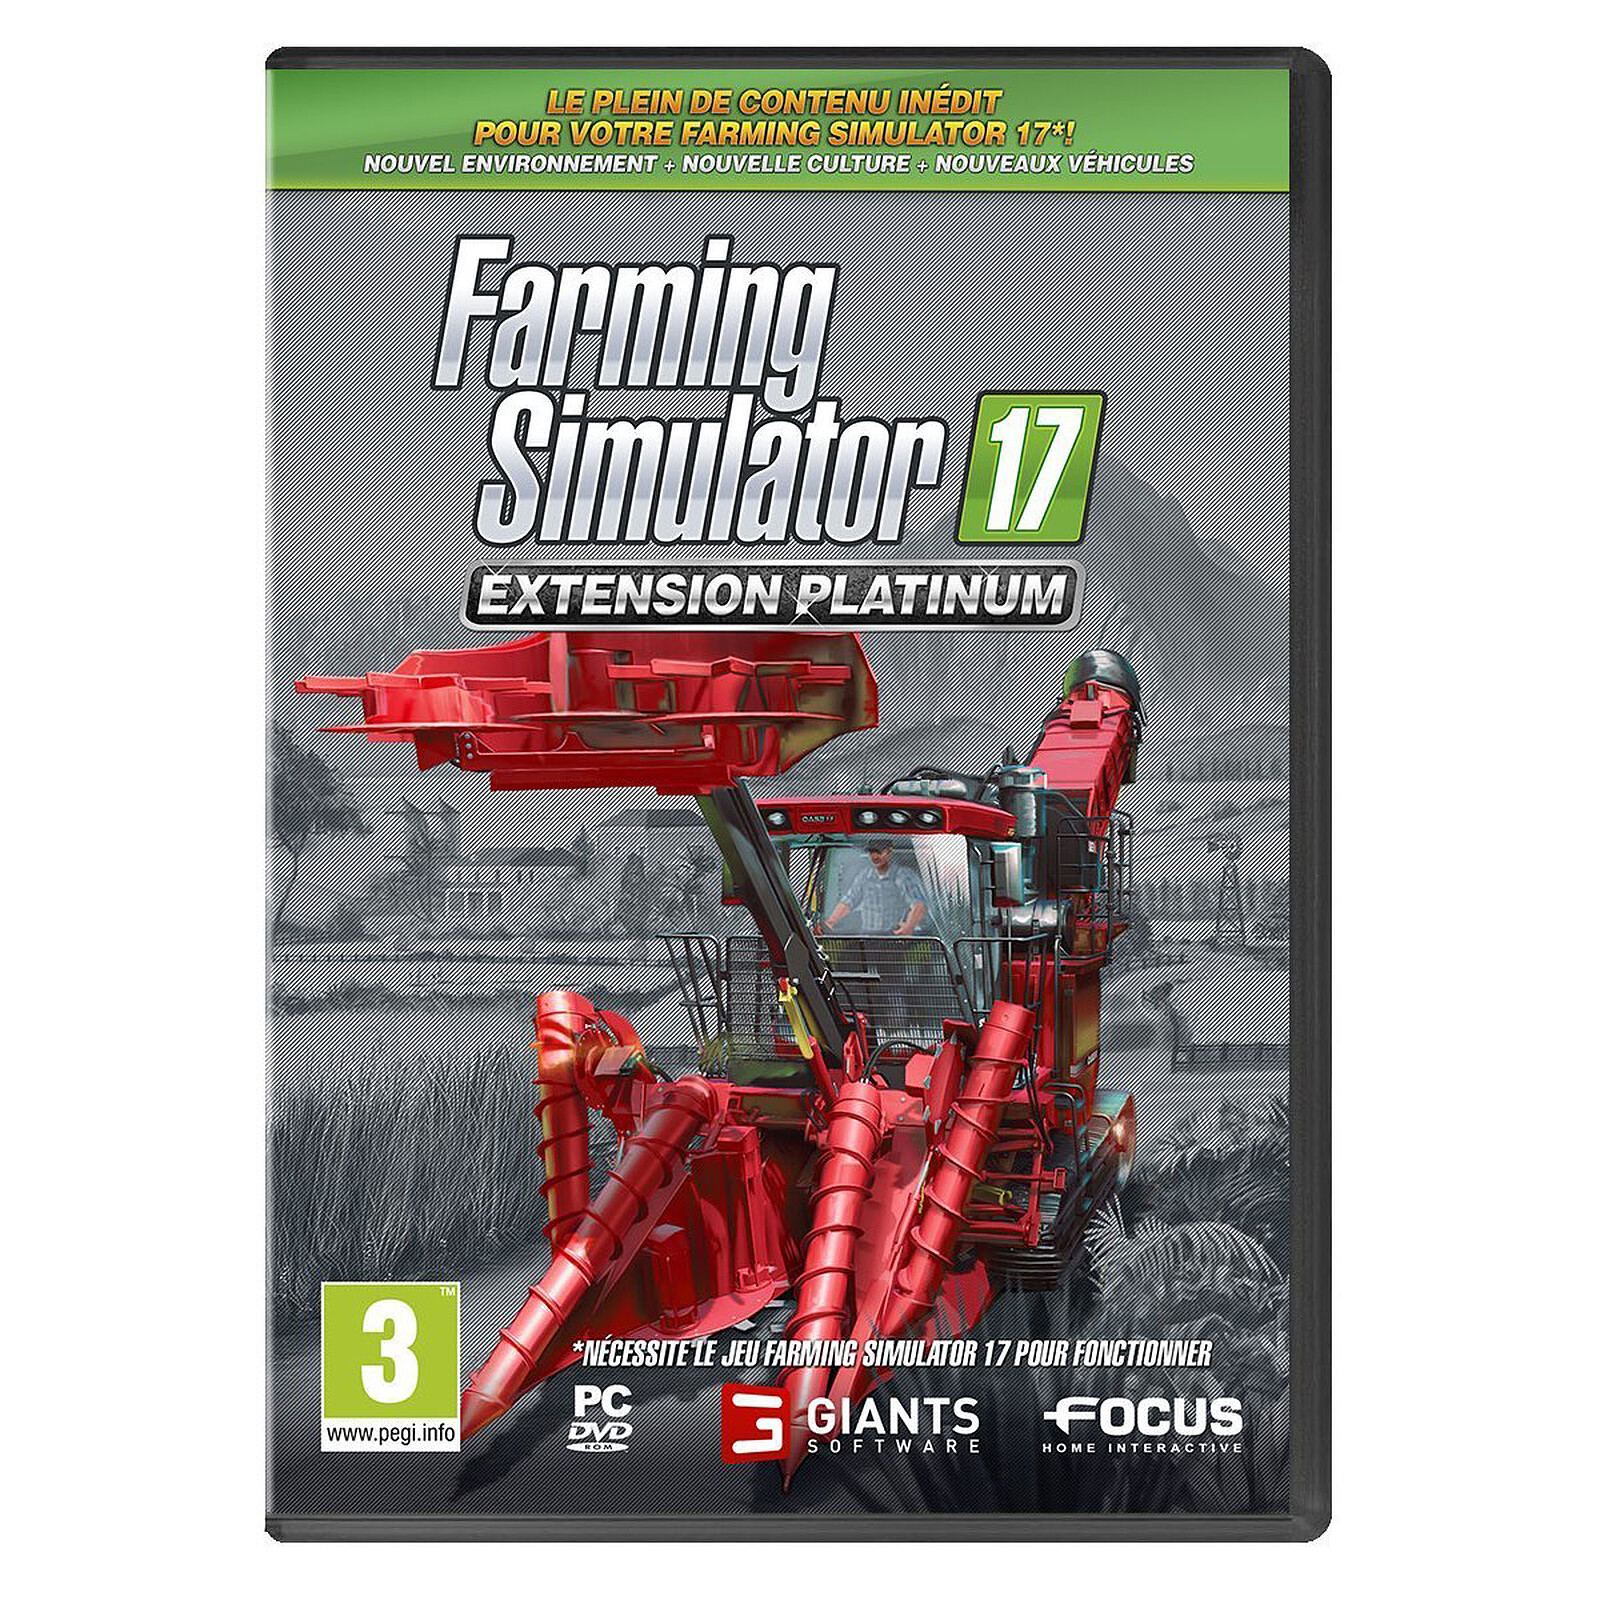 Farming Simulator 17 Extension Platinum Pc Jeux Pc Focus Home Interactive Sur Ldlc Com